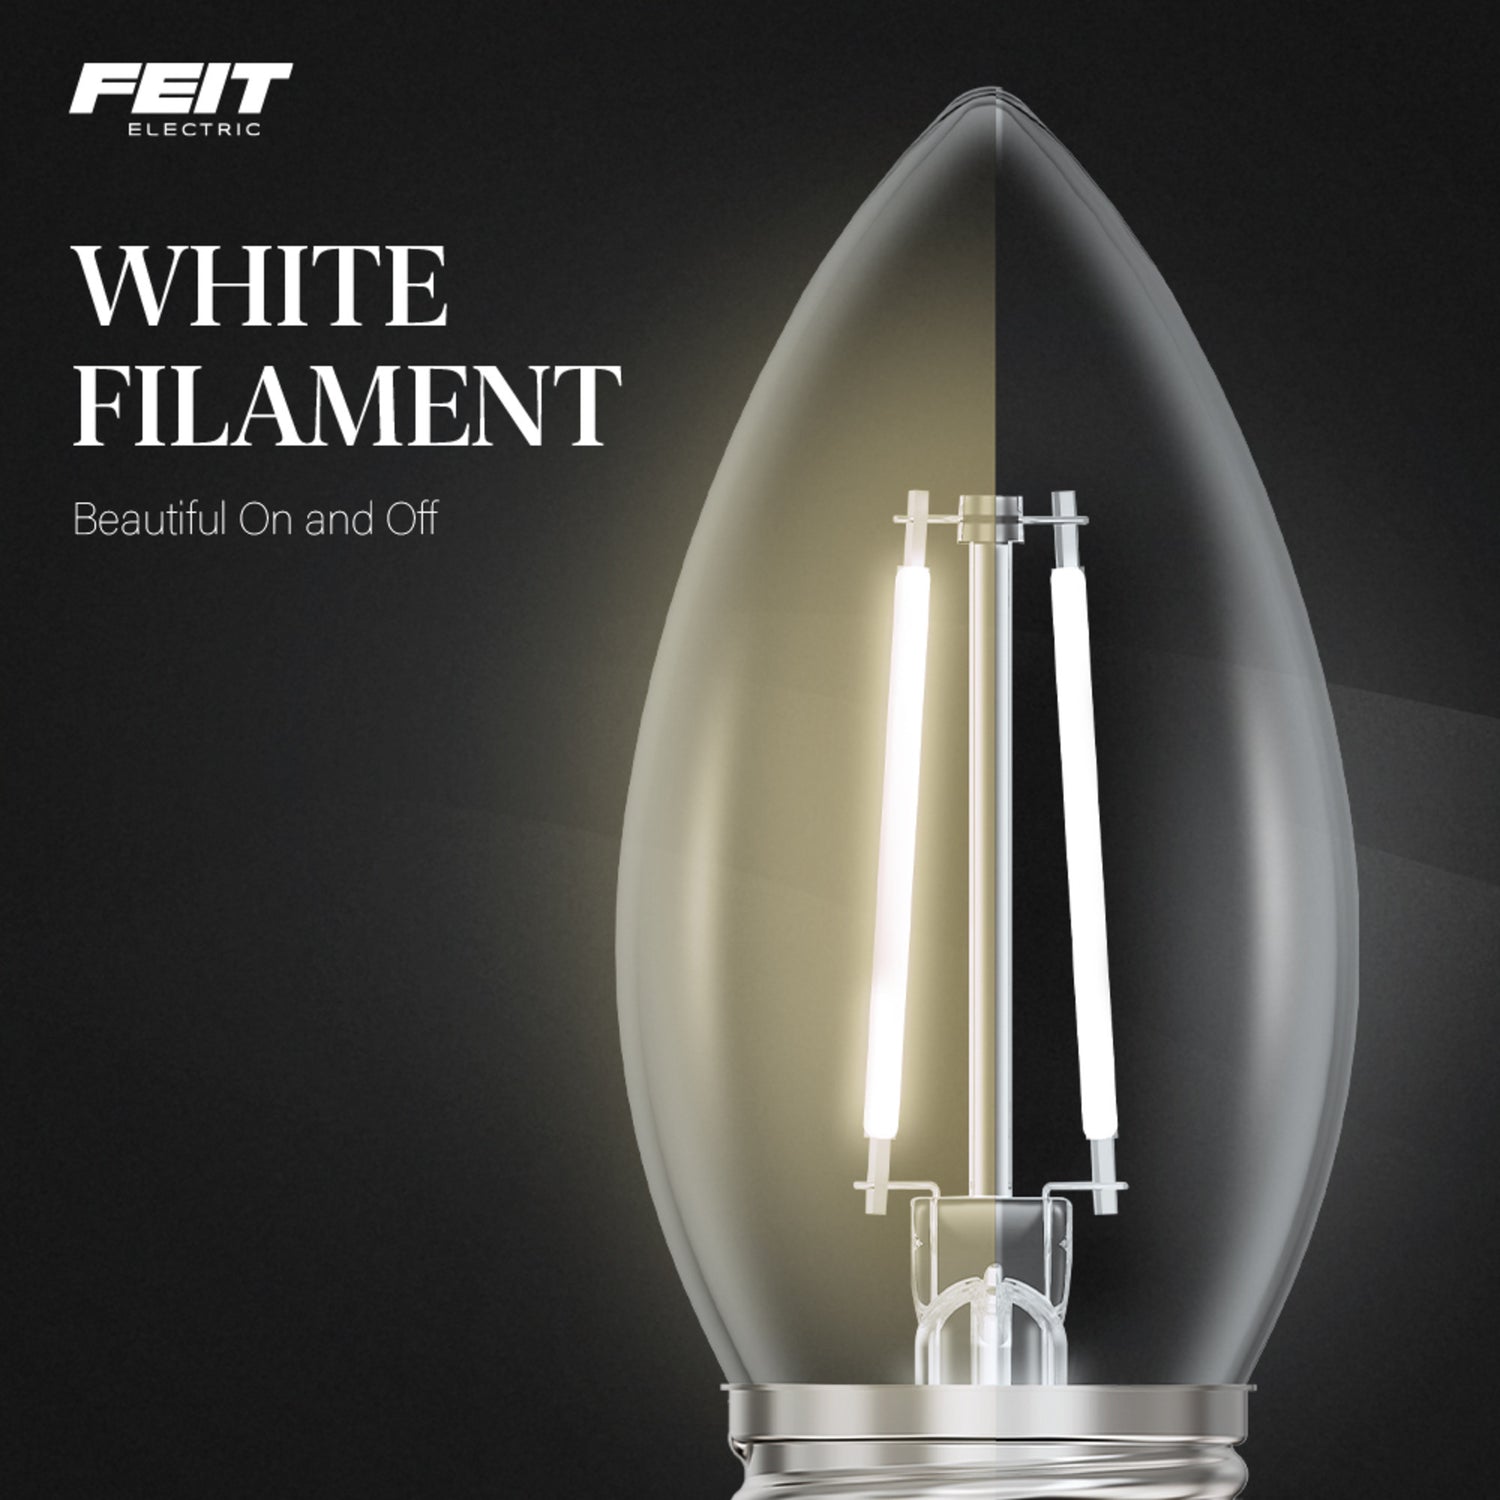 5.5W (60W Equivalent) Soft White (2700K) B10 Shape (E26 Base) Torpedo Tip White Filament LED Bulb (3-Pack)